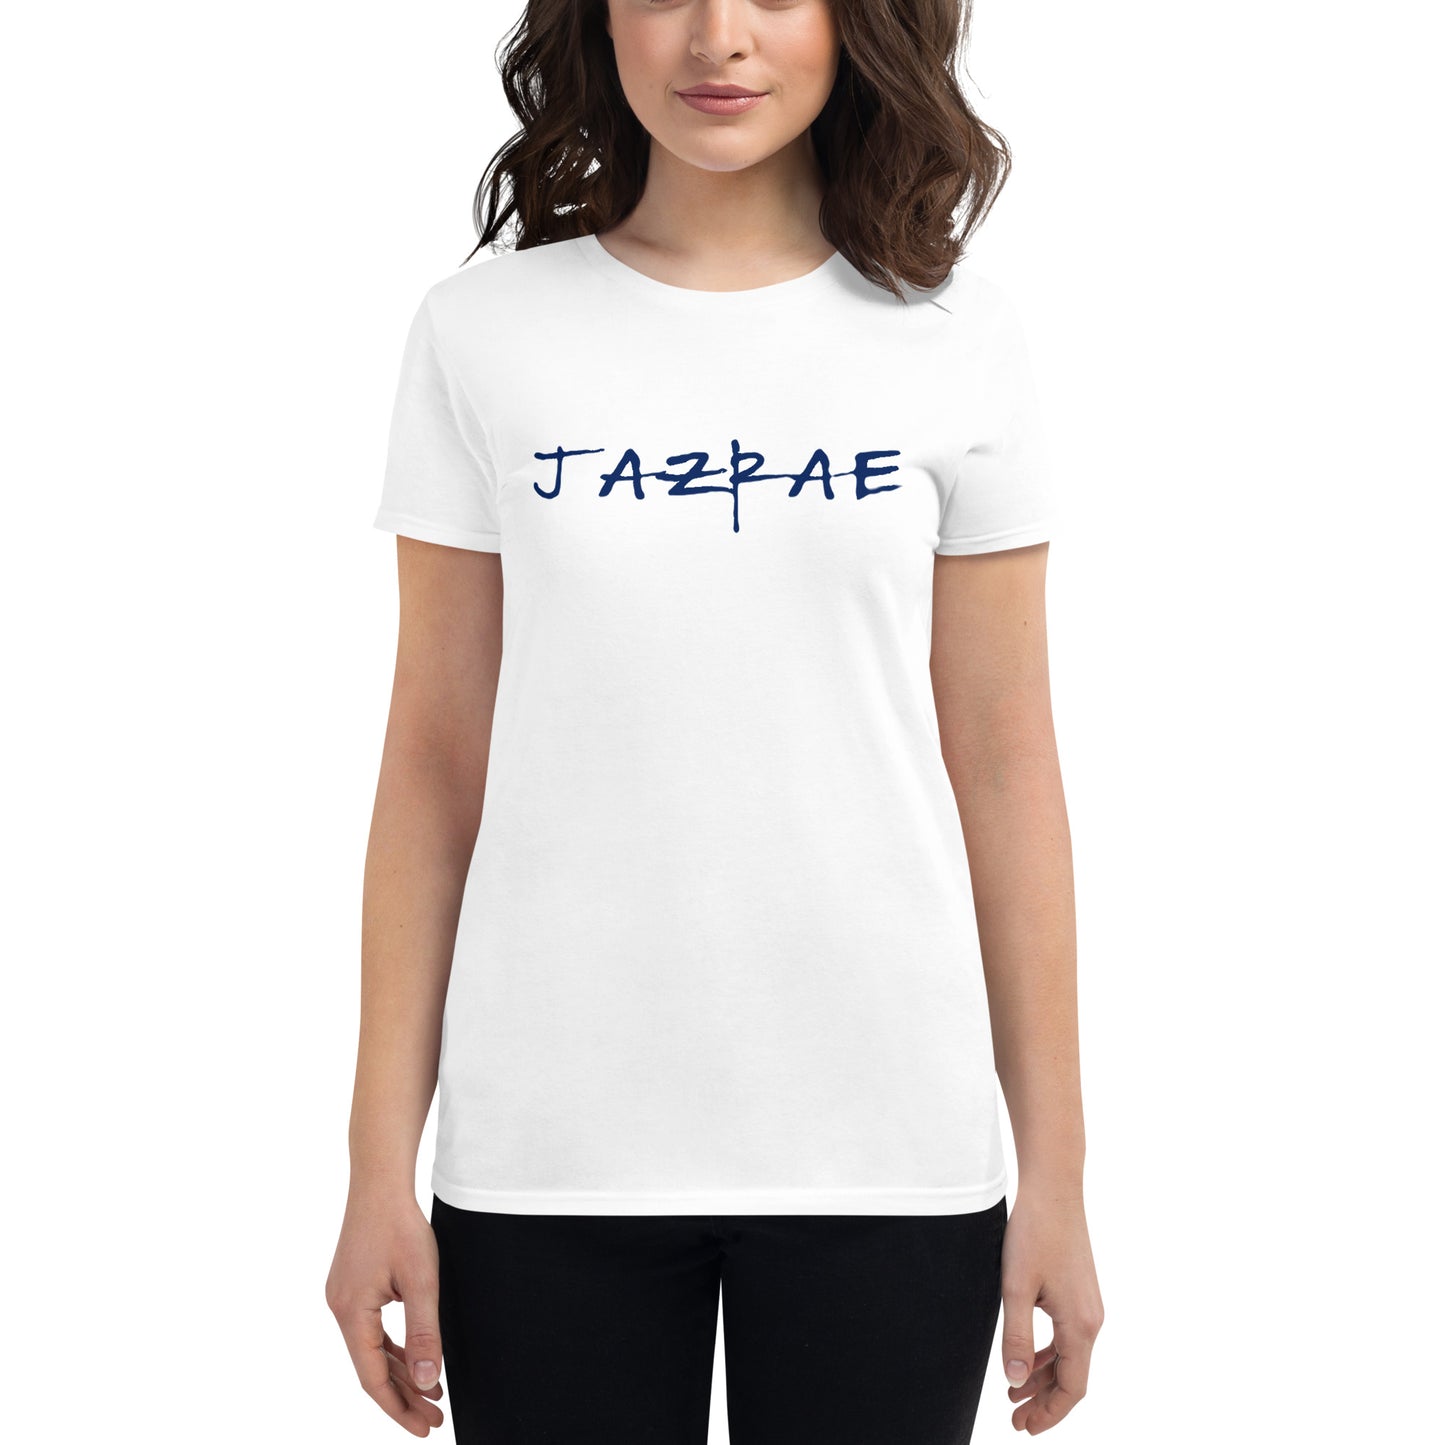 JAZRAE Women's short sleeve t-shirt